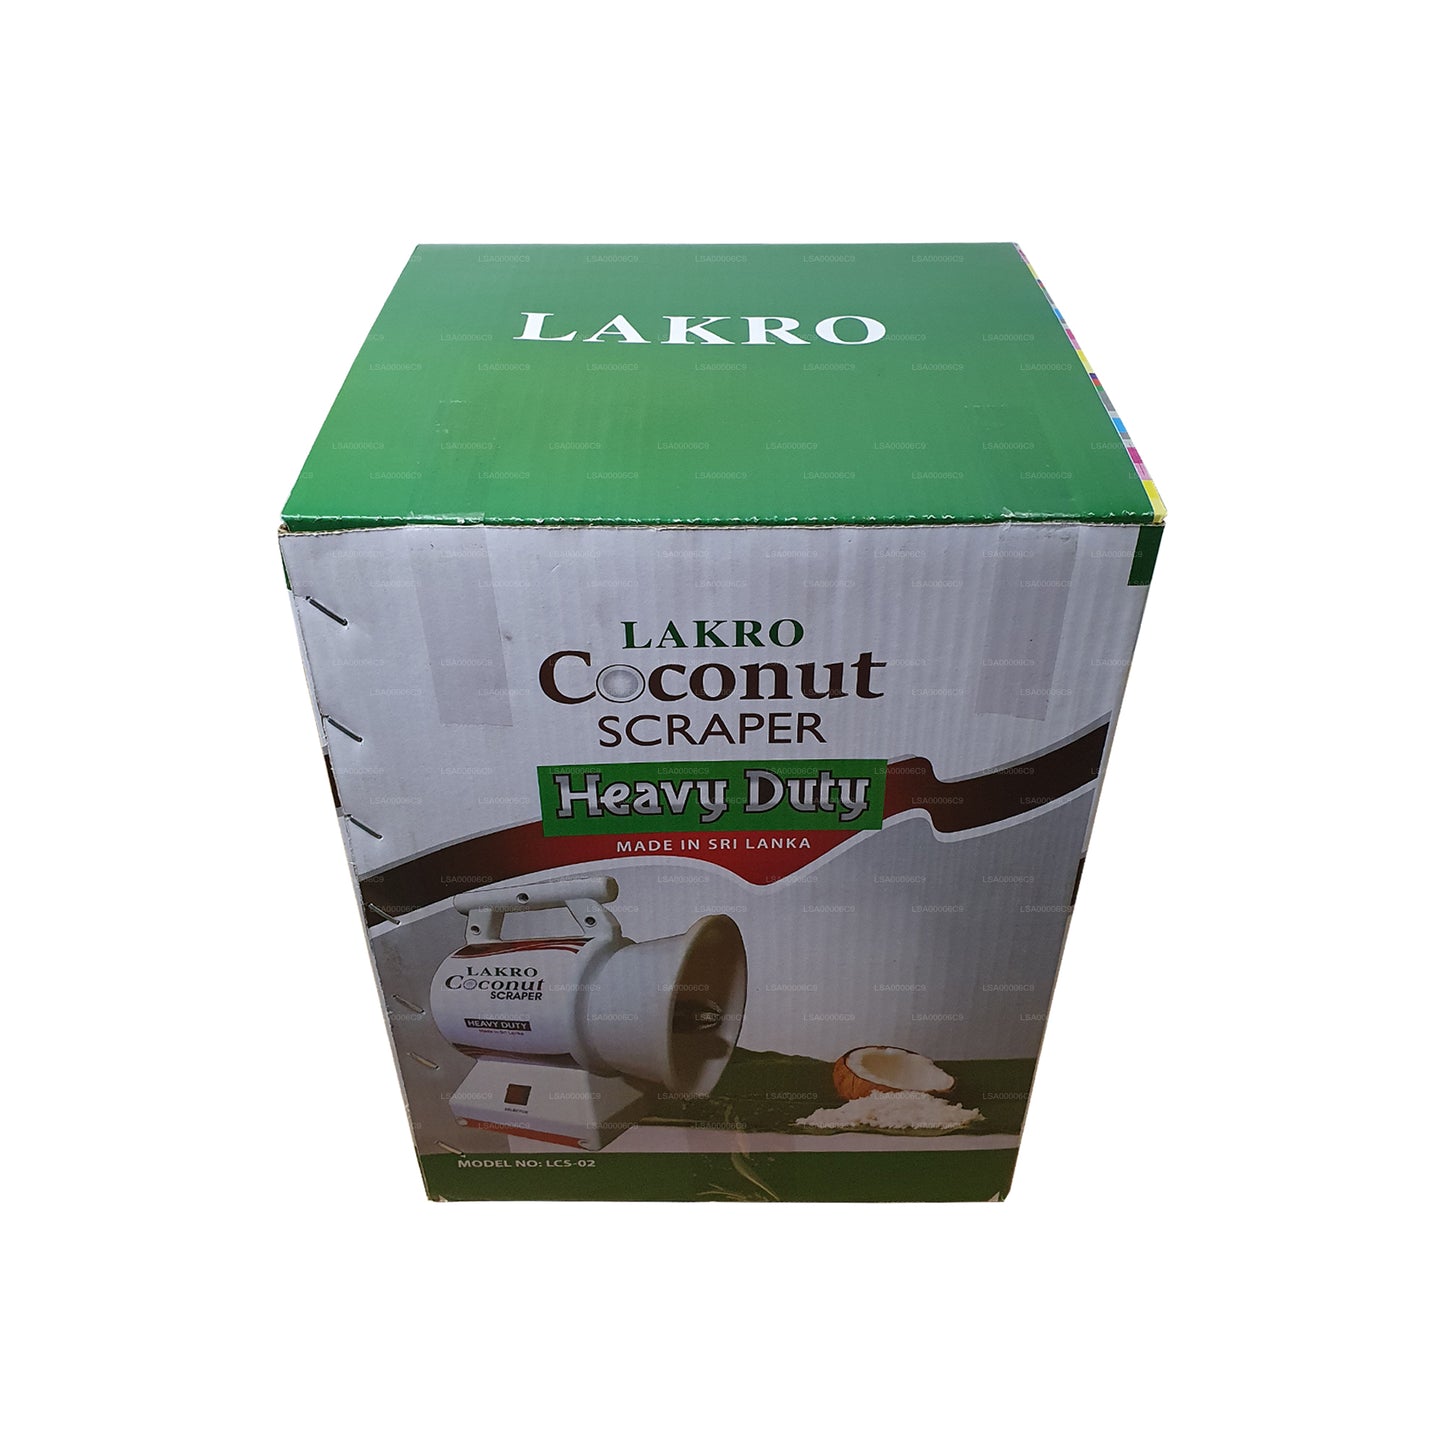 Lakro kokosschrapermachine voor zwaar gebruik (LCS-007)